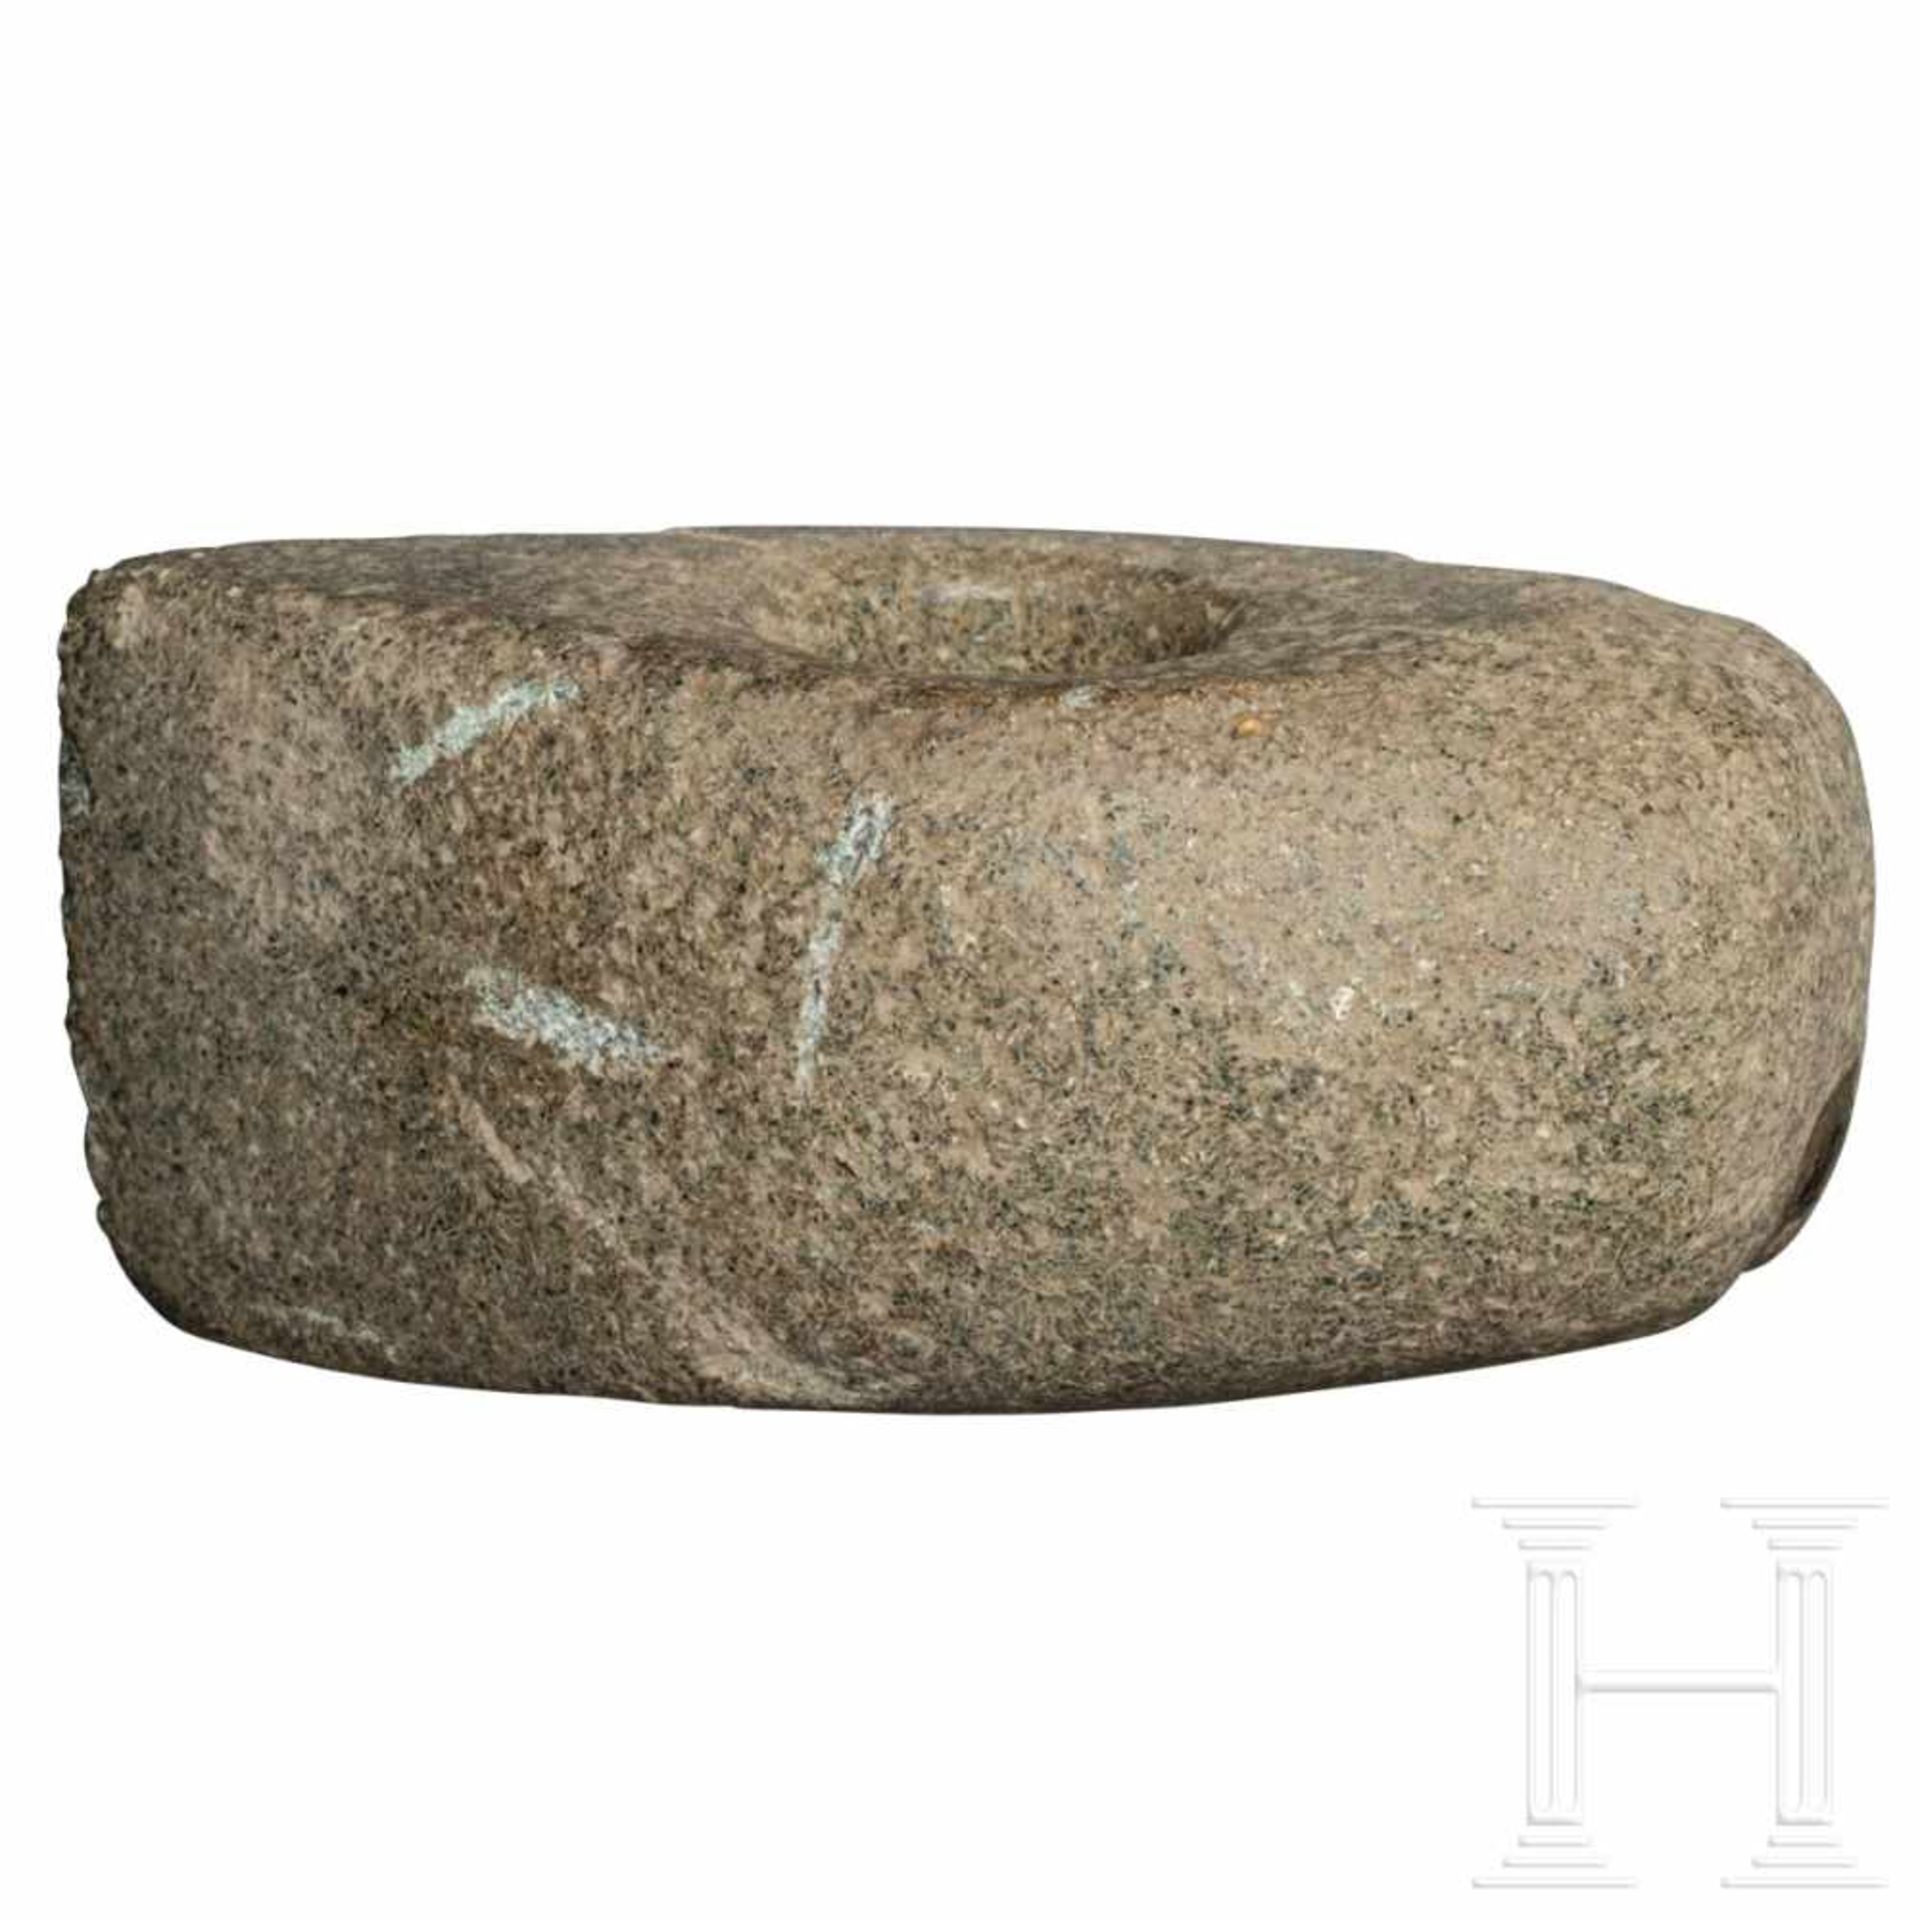 Hammeraxt, Deutschland, 5. – 4. Jtsd. v. Chr. - Bild 2 aus 2